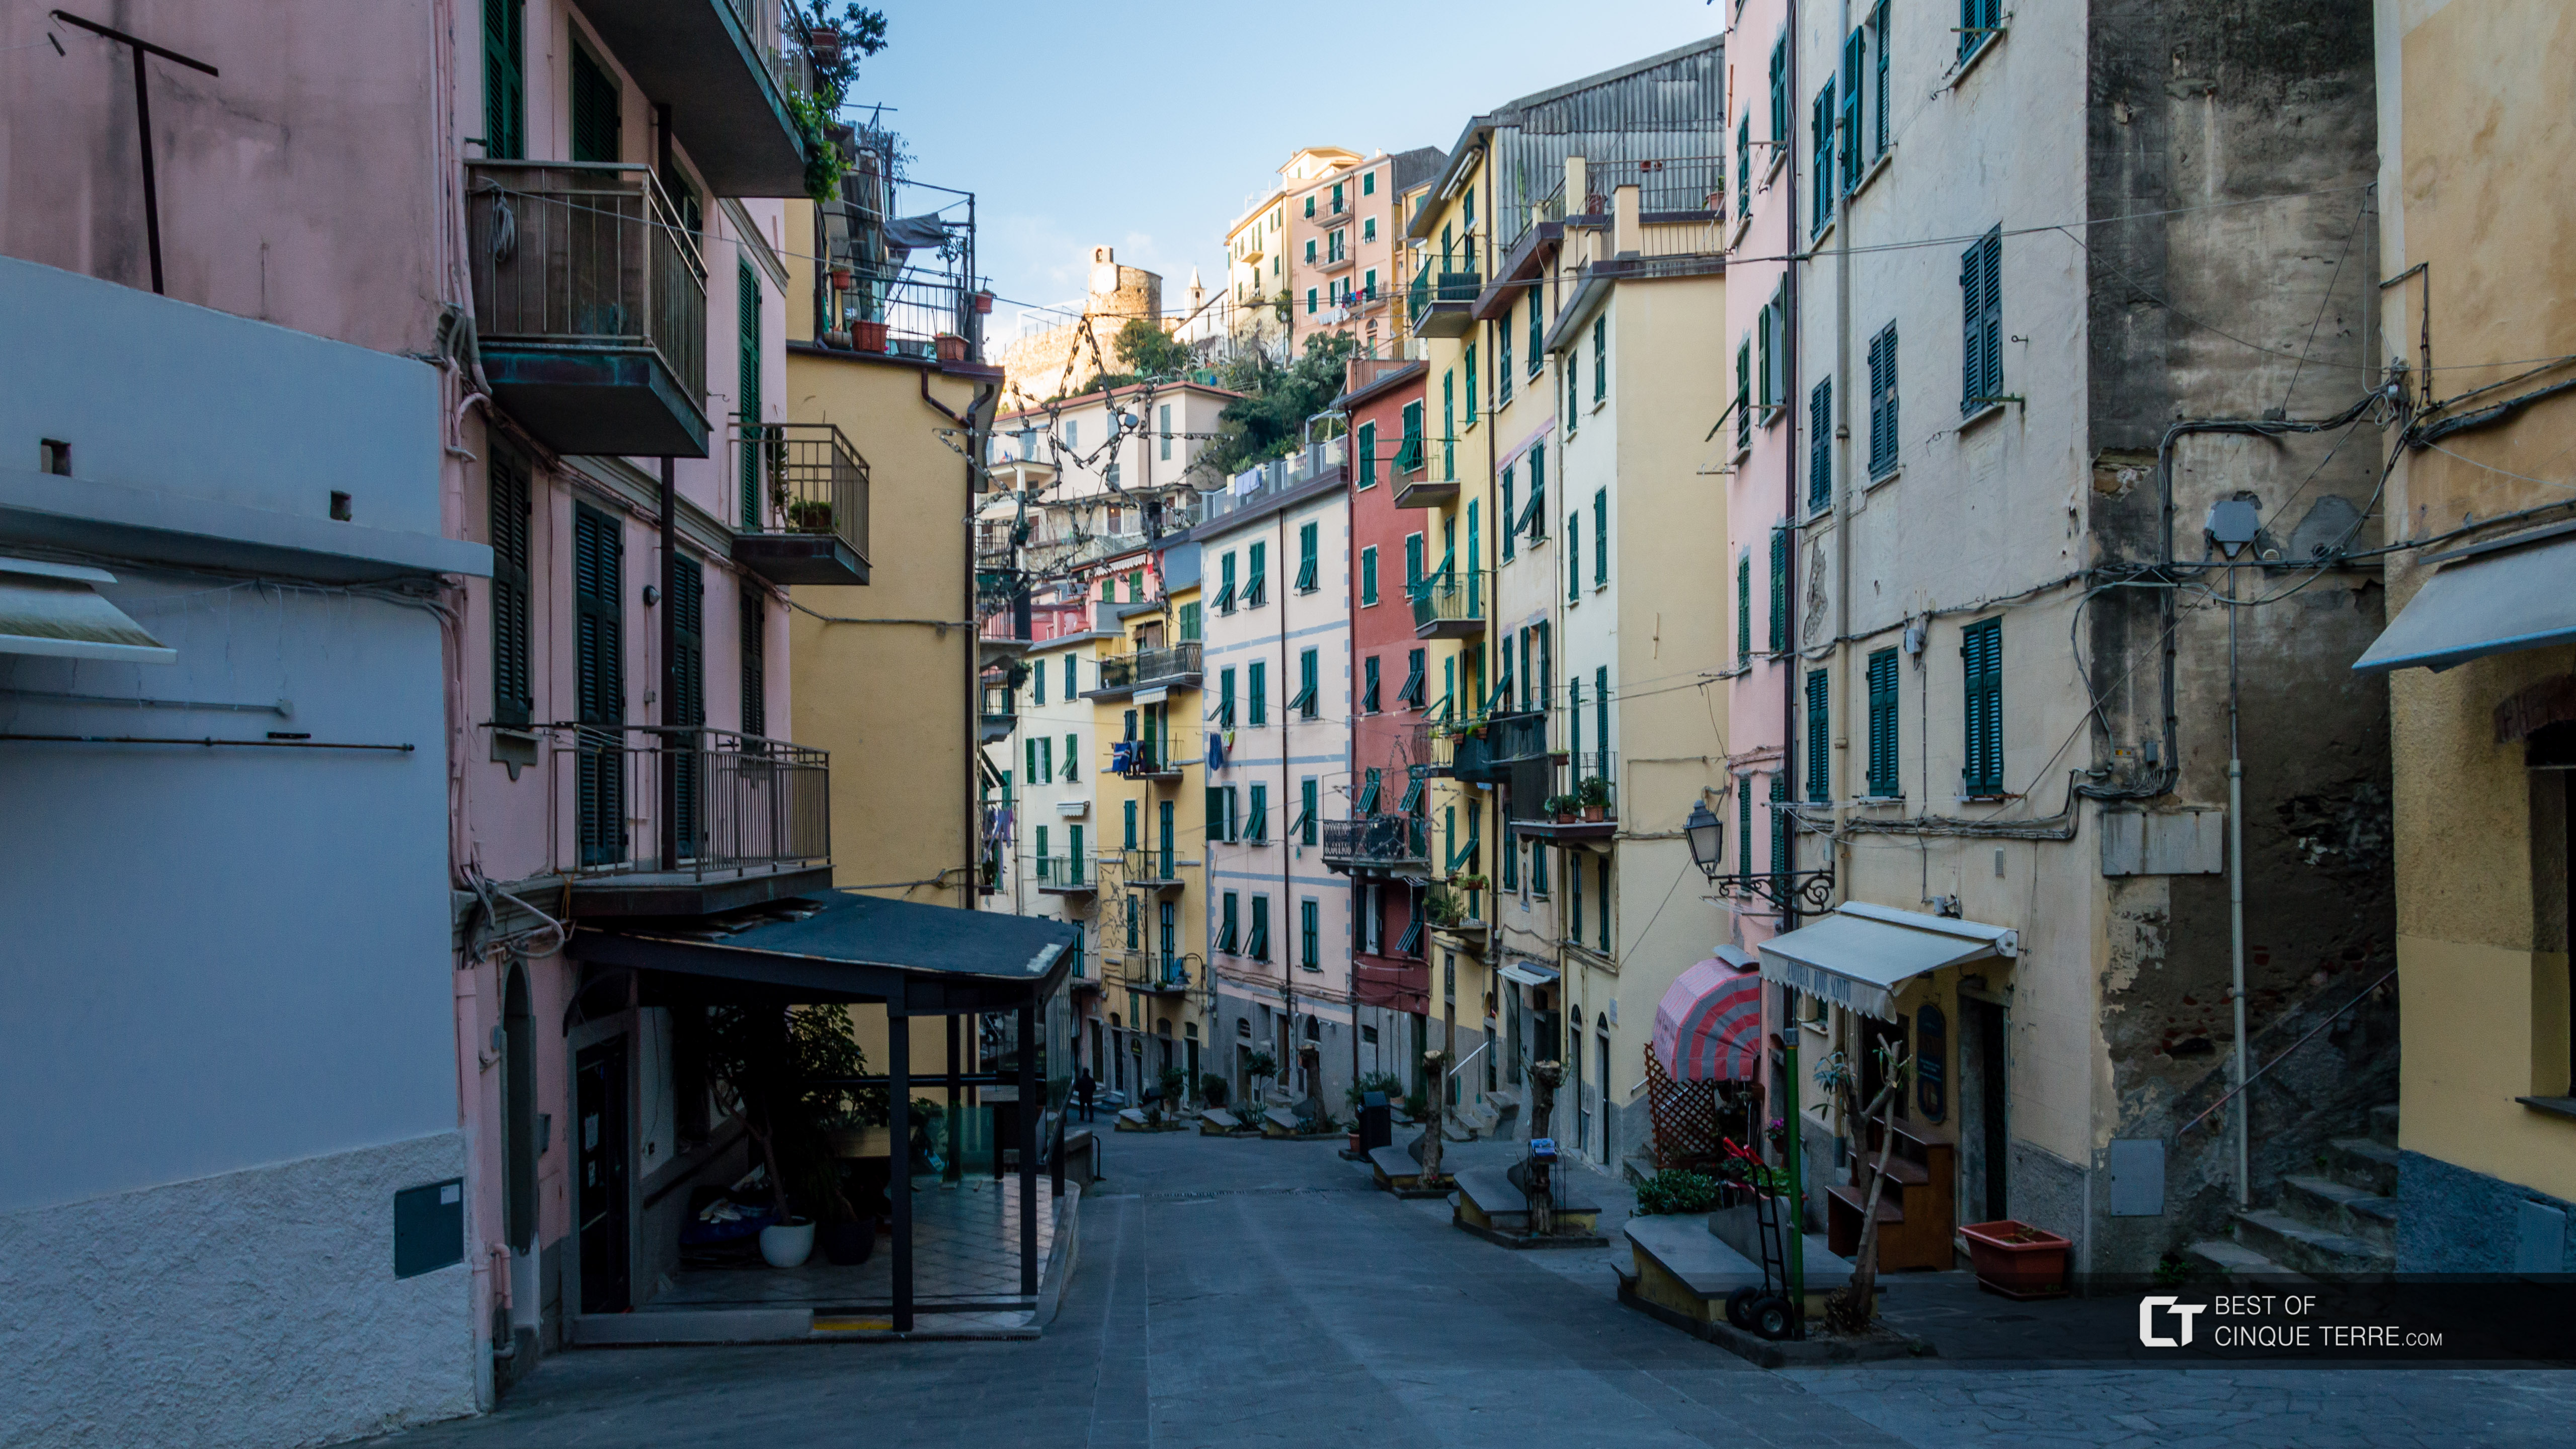 The main street in winter, Riomaggiore, Cinque Terre, Italy